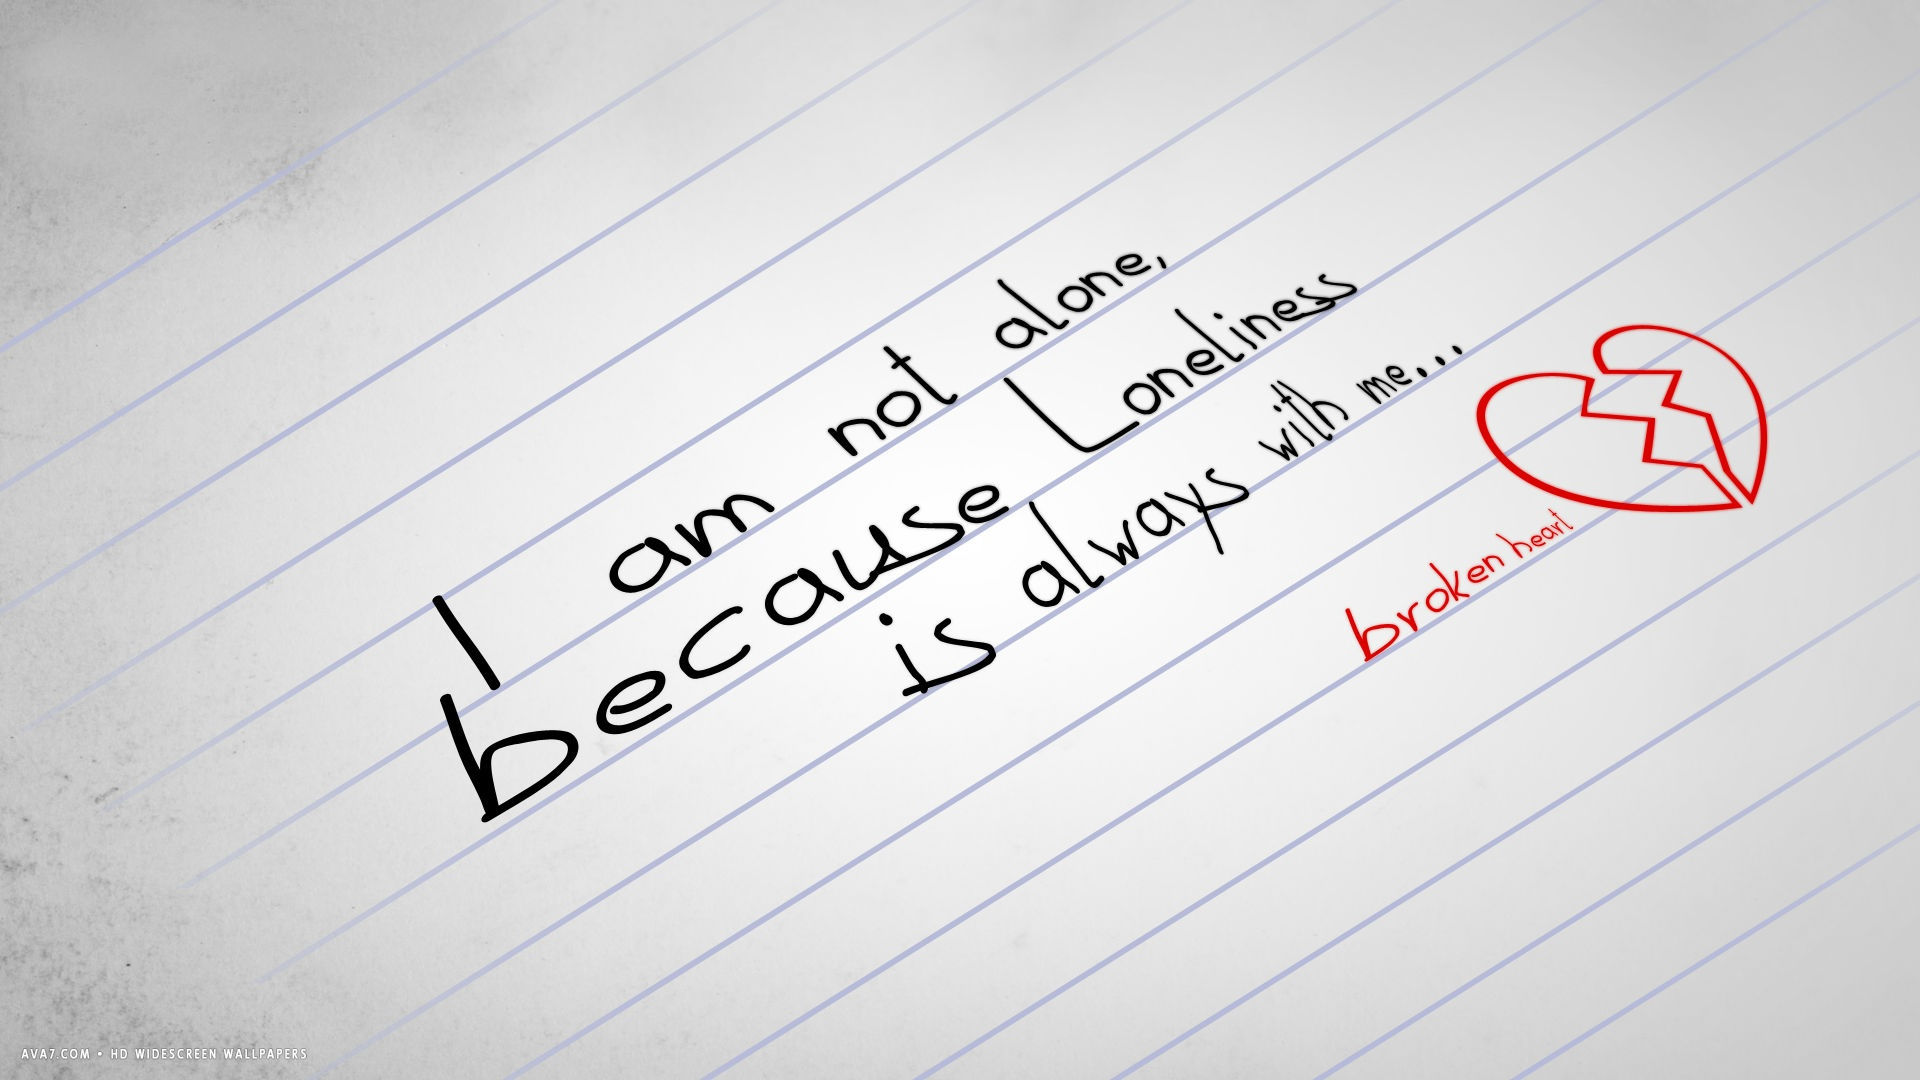 Broken Heart Alone Loneliness Words Text Hd Widescreen - Love Broken Heart Alone - HD Wallpaper 